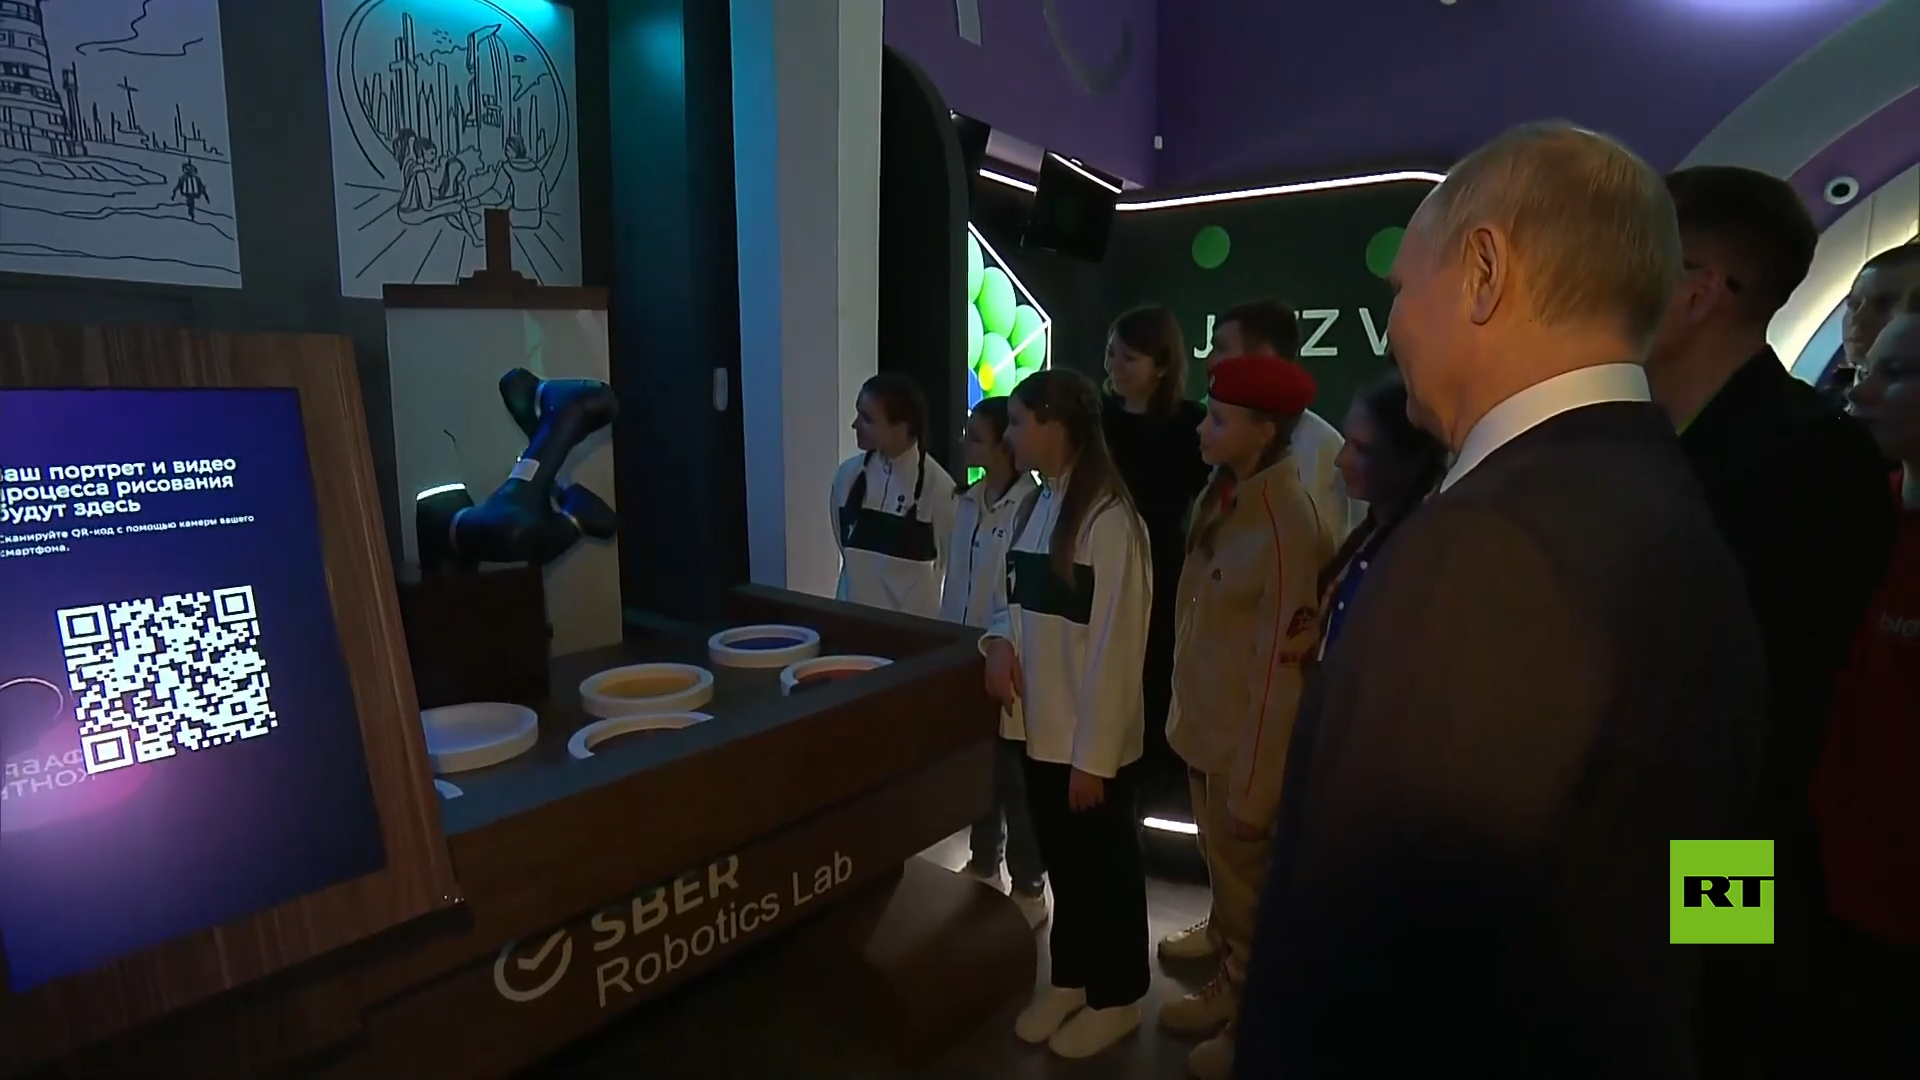 يد روبوتية ترسم صورة بوتين أثناء زيارته لمعرض 